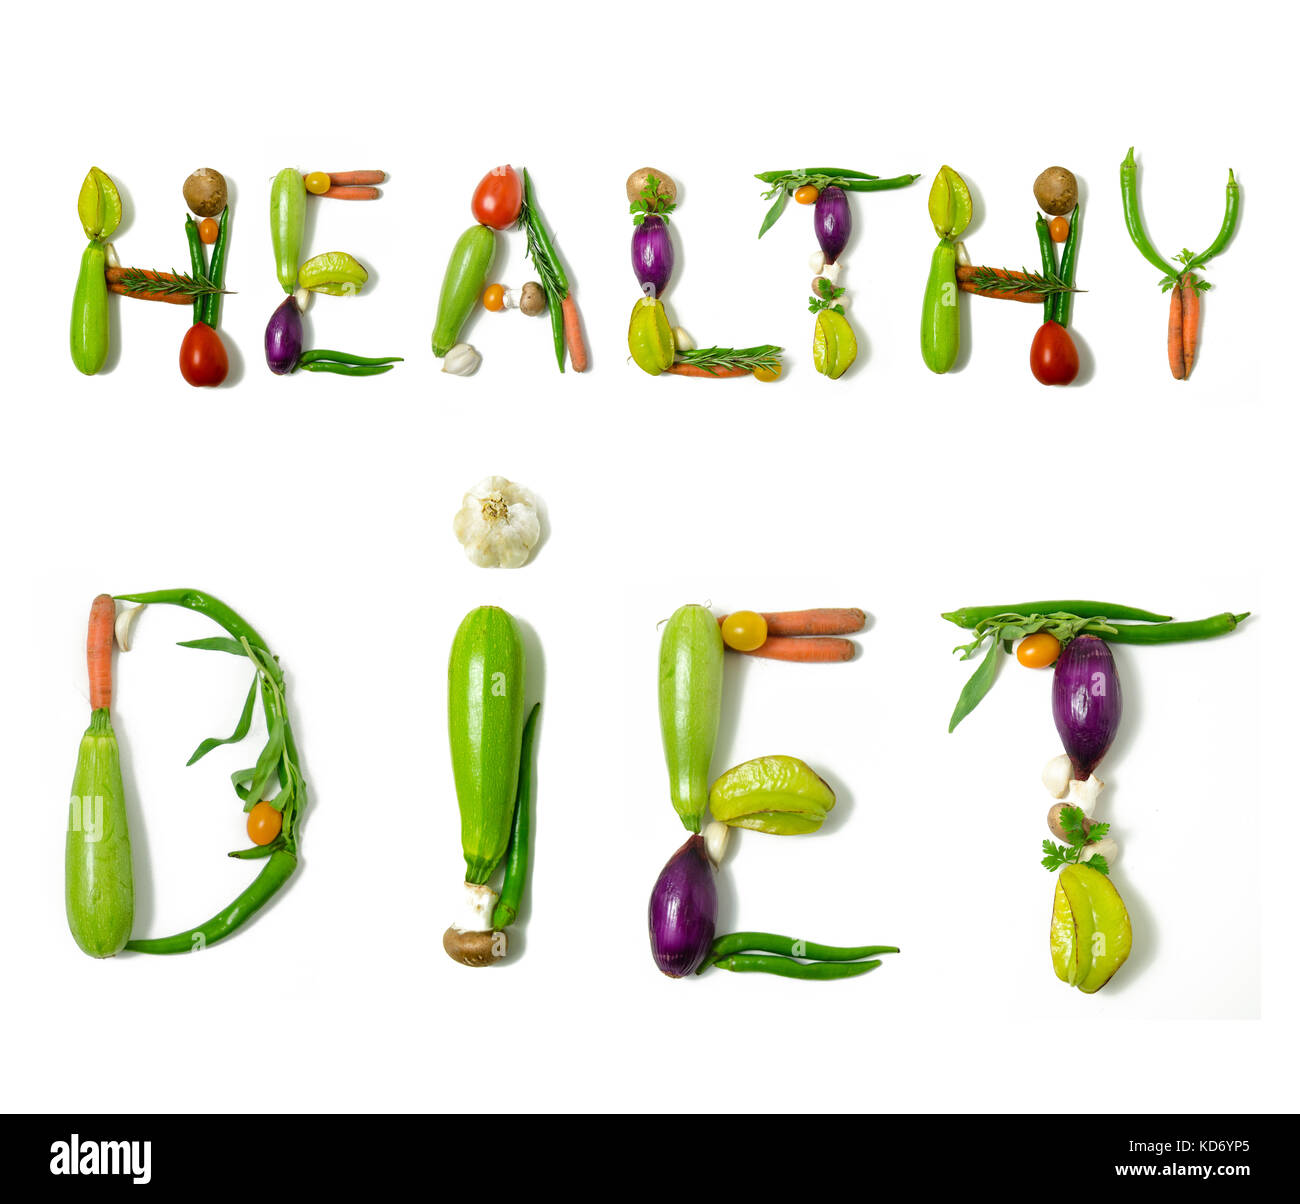 Phrase 'Alimentation saine' écrit avec des légumes comme un concept de style de vie sain, régime végétarien ou végétalien, la remise en forme ou la réduction de calories Banque D'Images